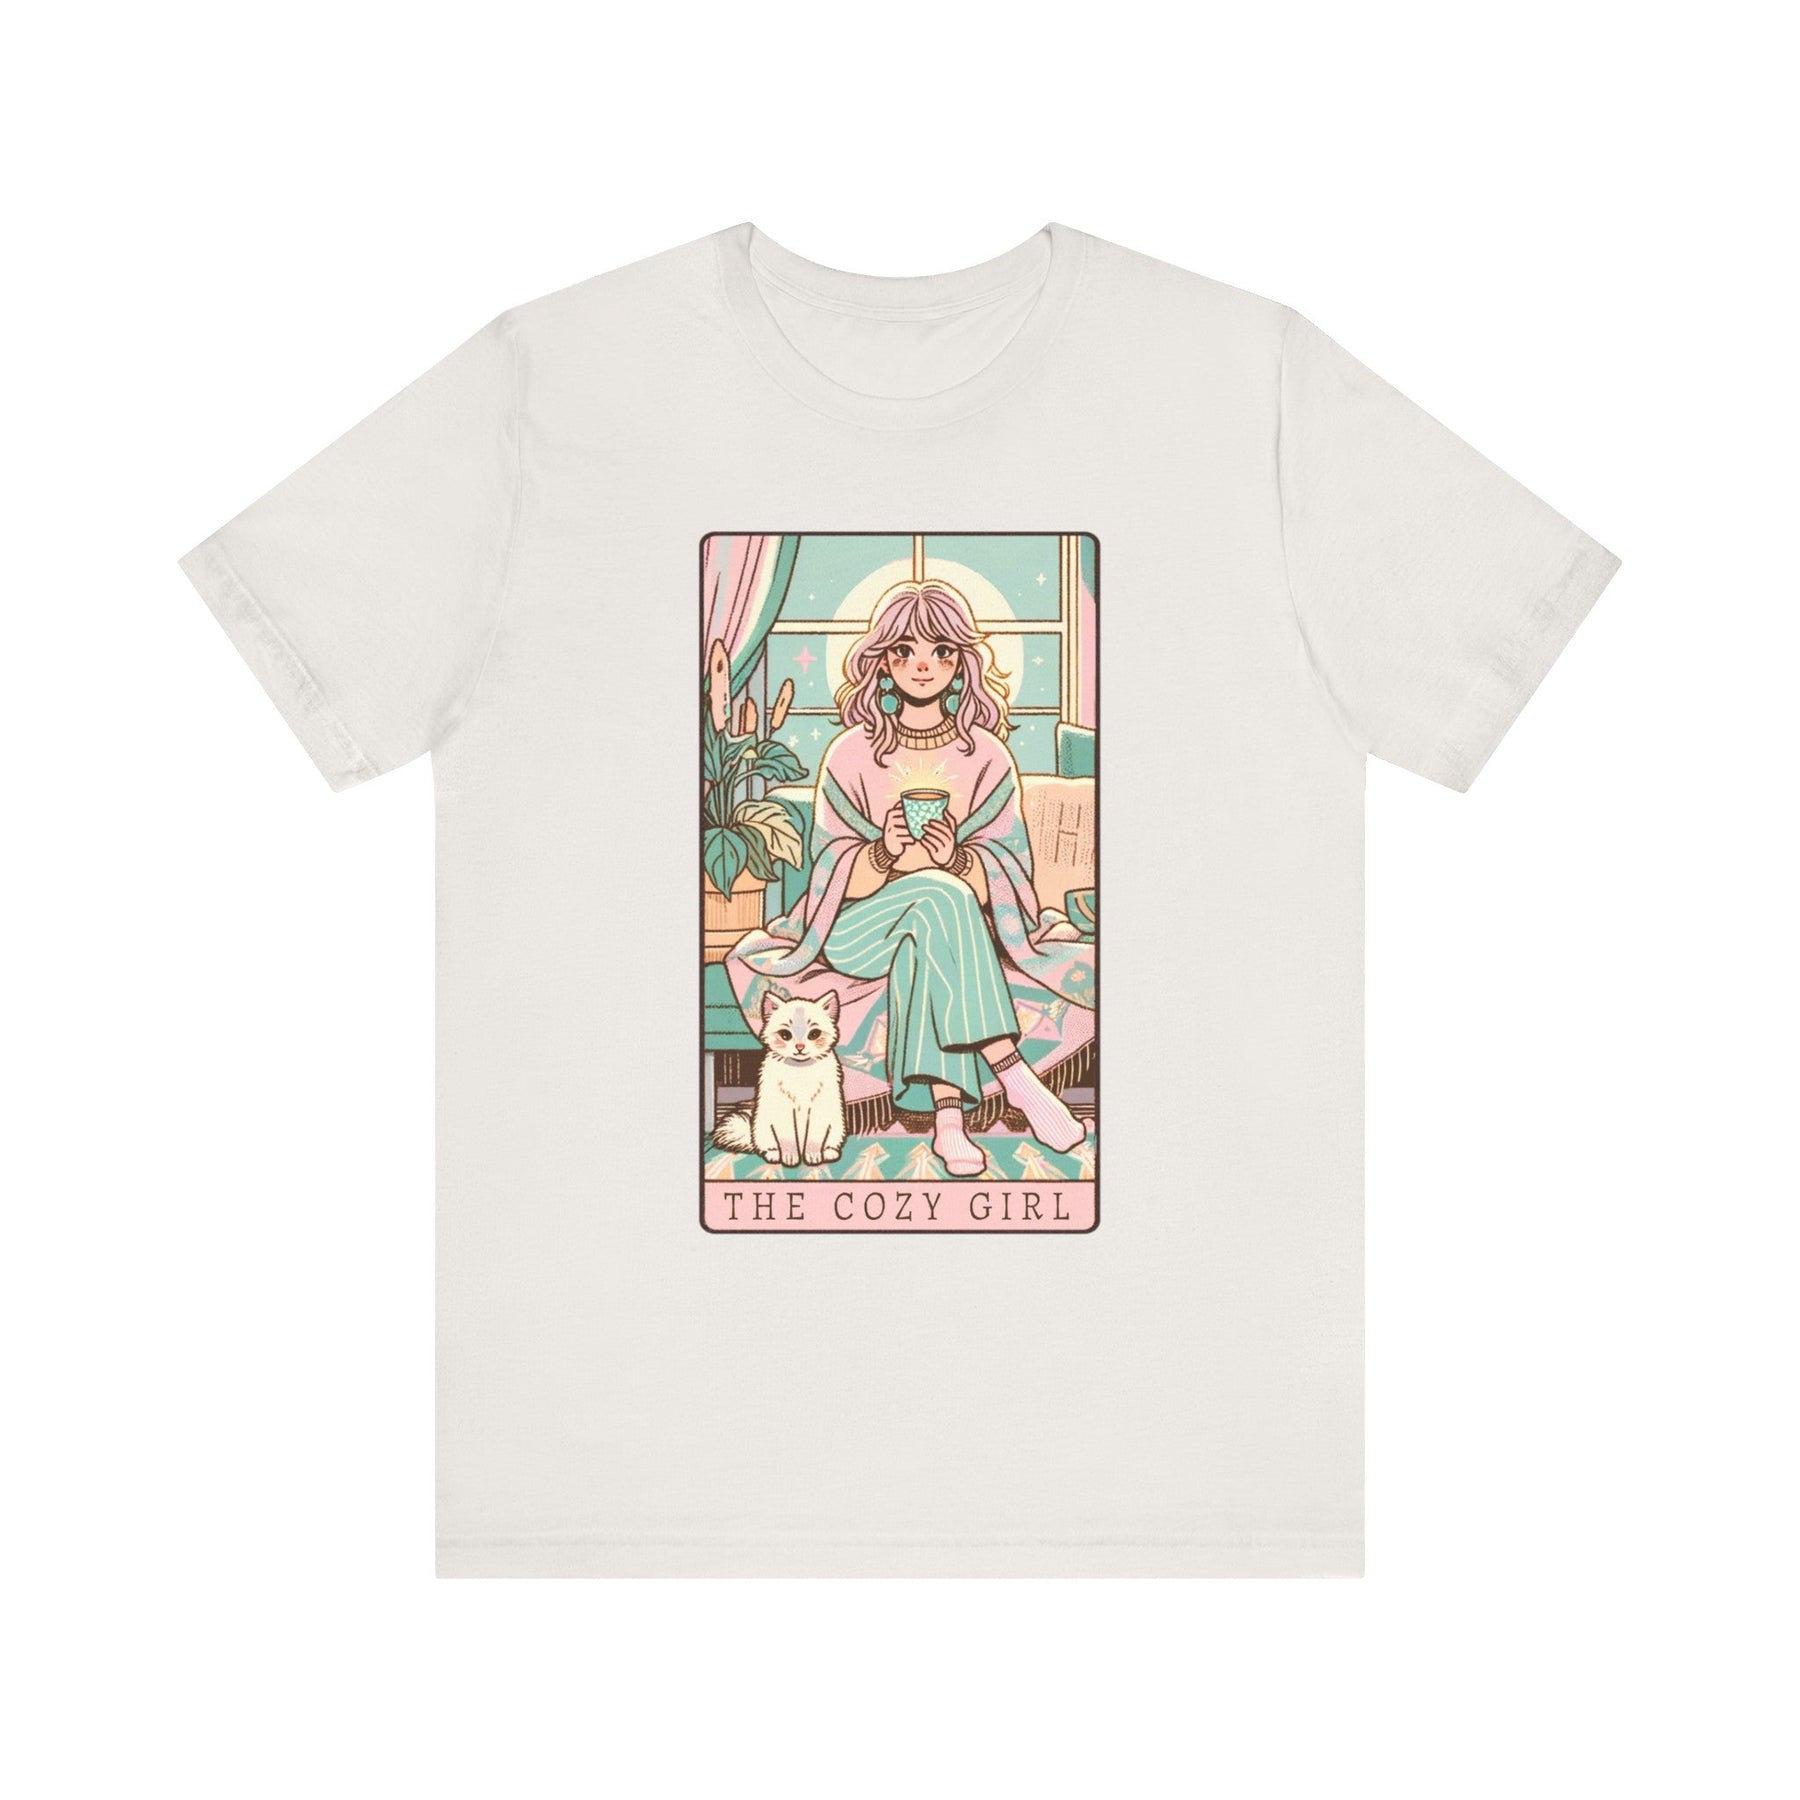 The Cozy Girl Day Tarot Card Short Sleeve Tee - Goth Cloth Co.T - Shirt67209845693157228170